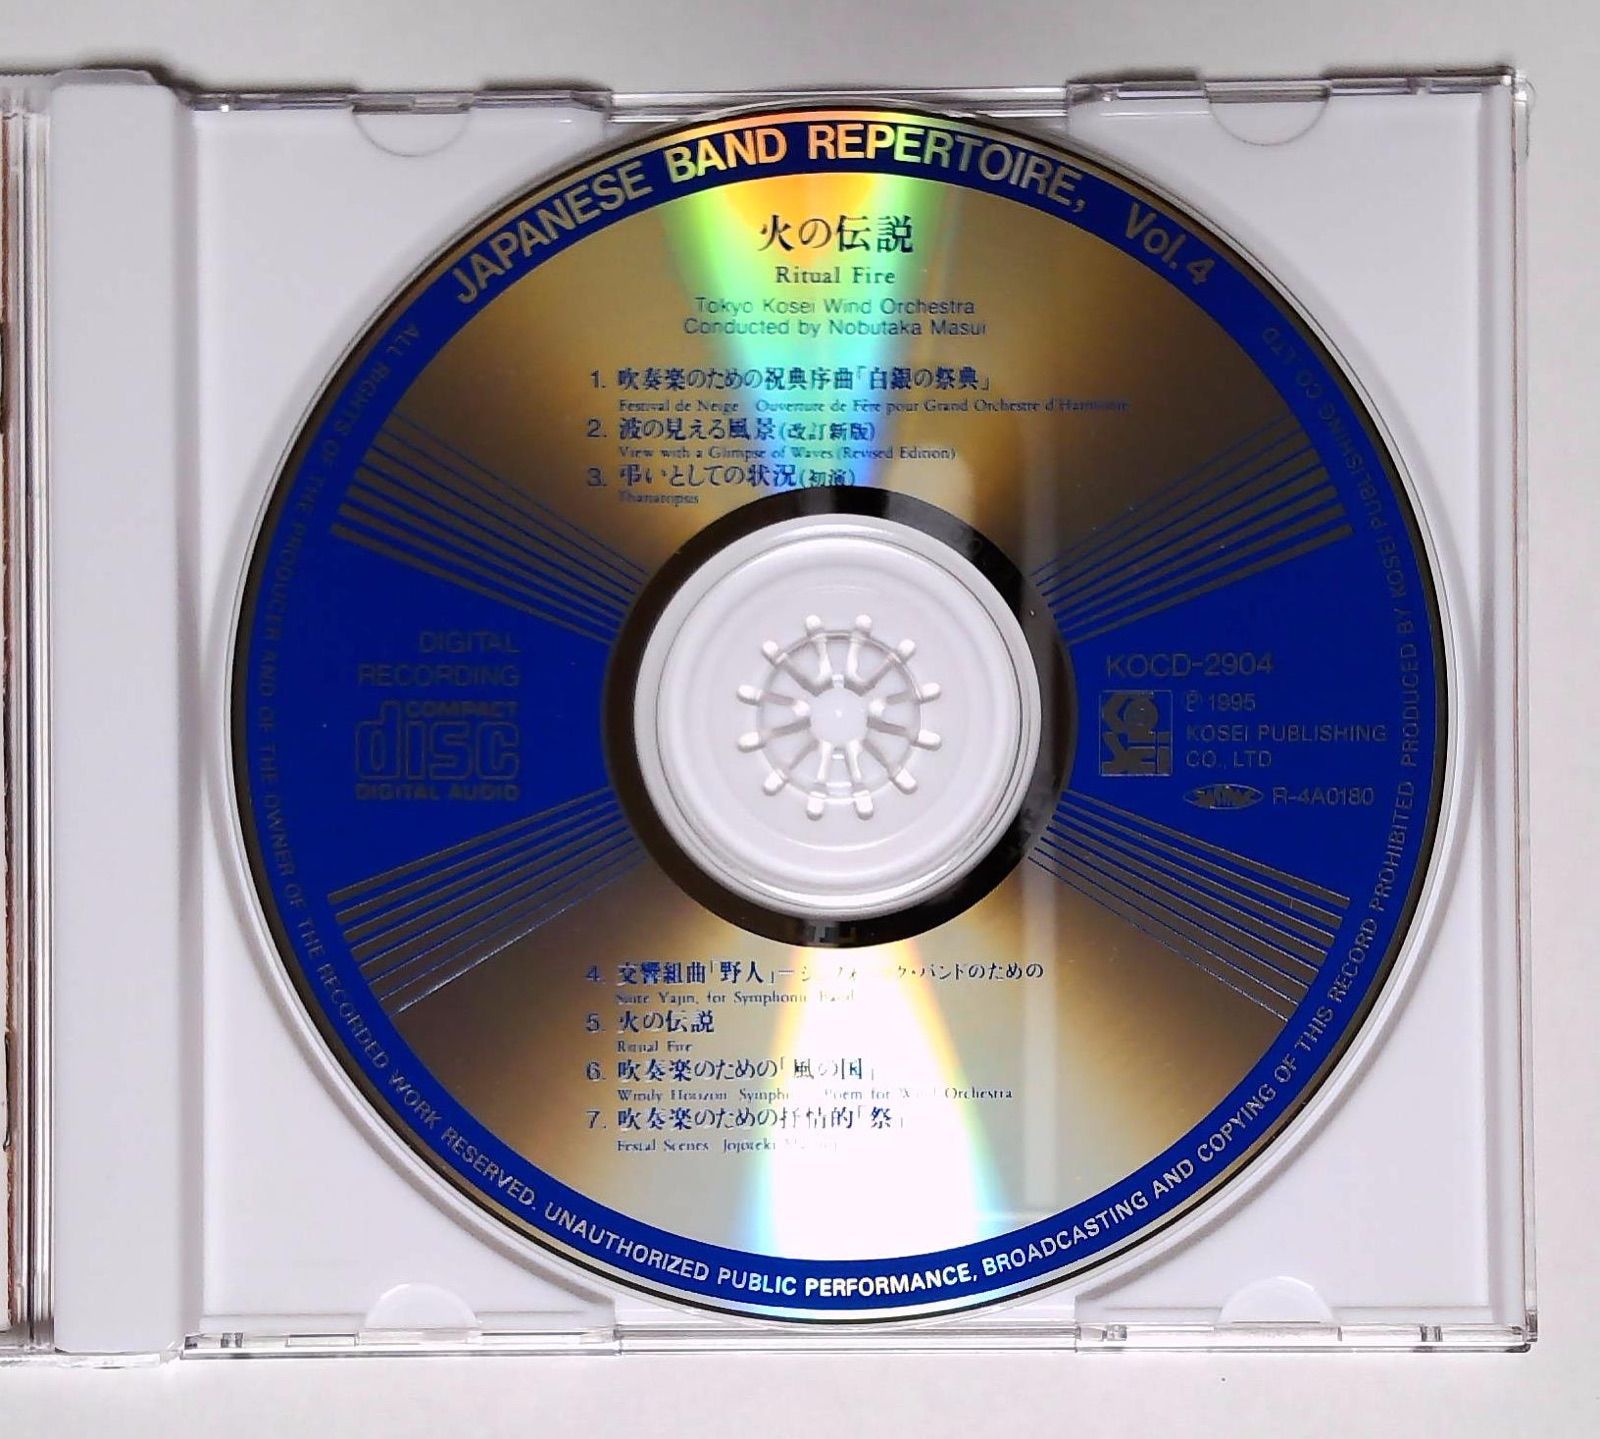 吹奏楽CD 東京佼成ウインドオーケストラ:火の伝説 邦人作品集 - メルカリ